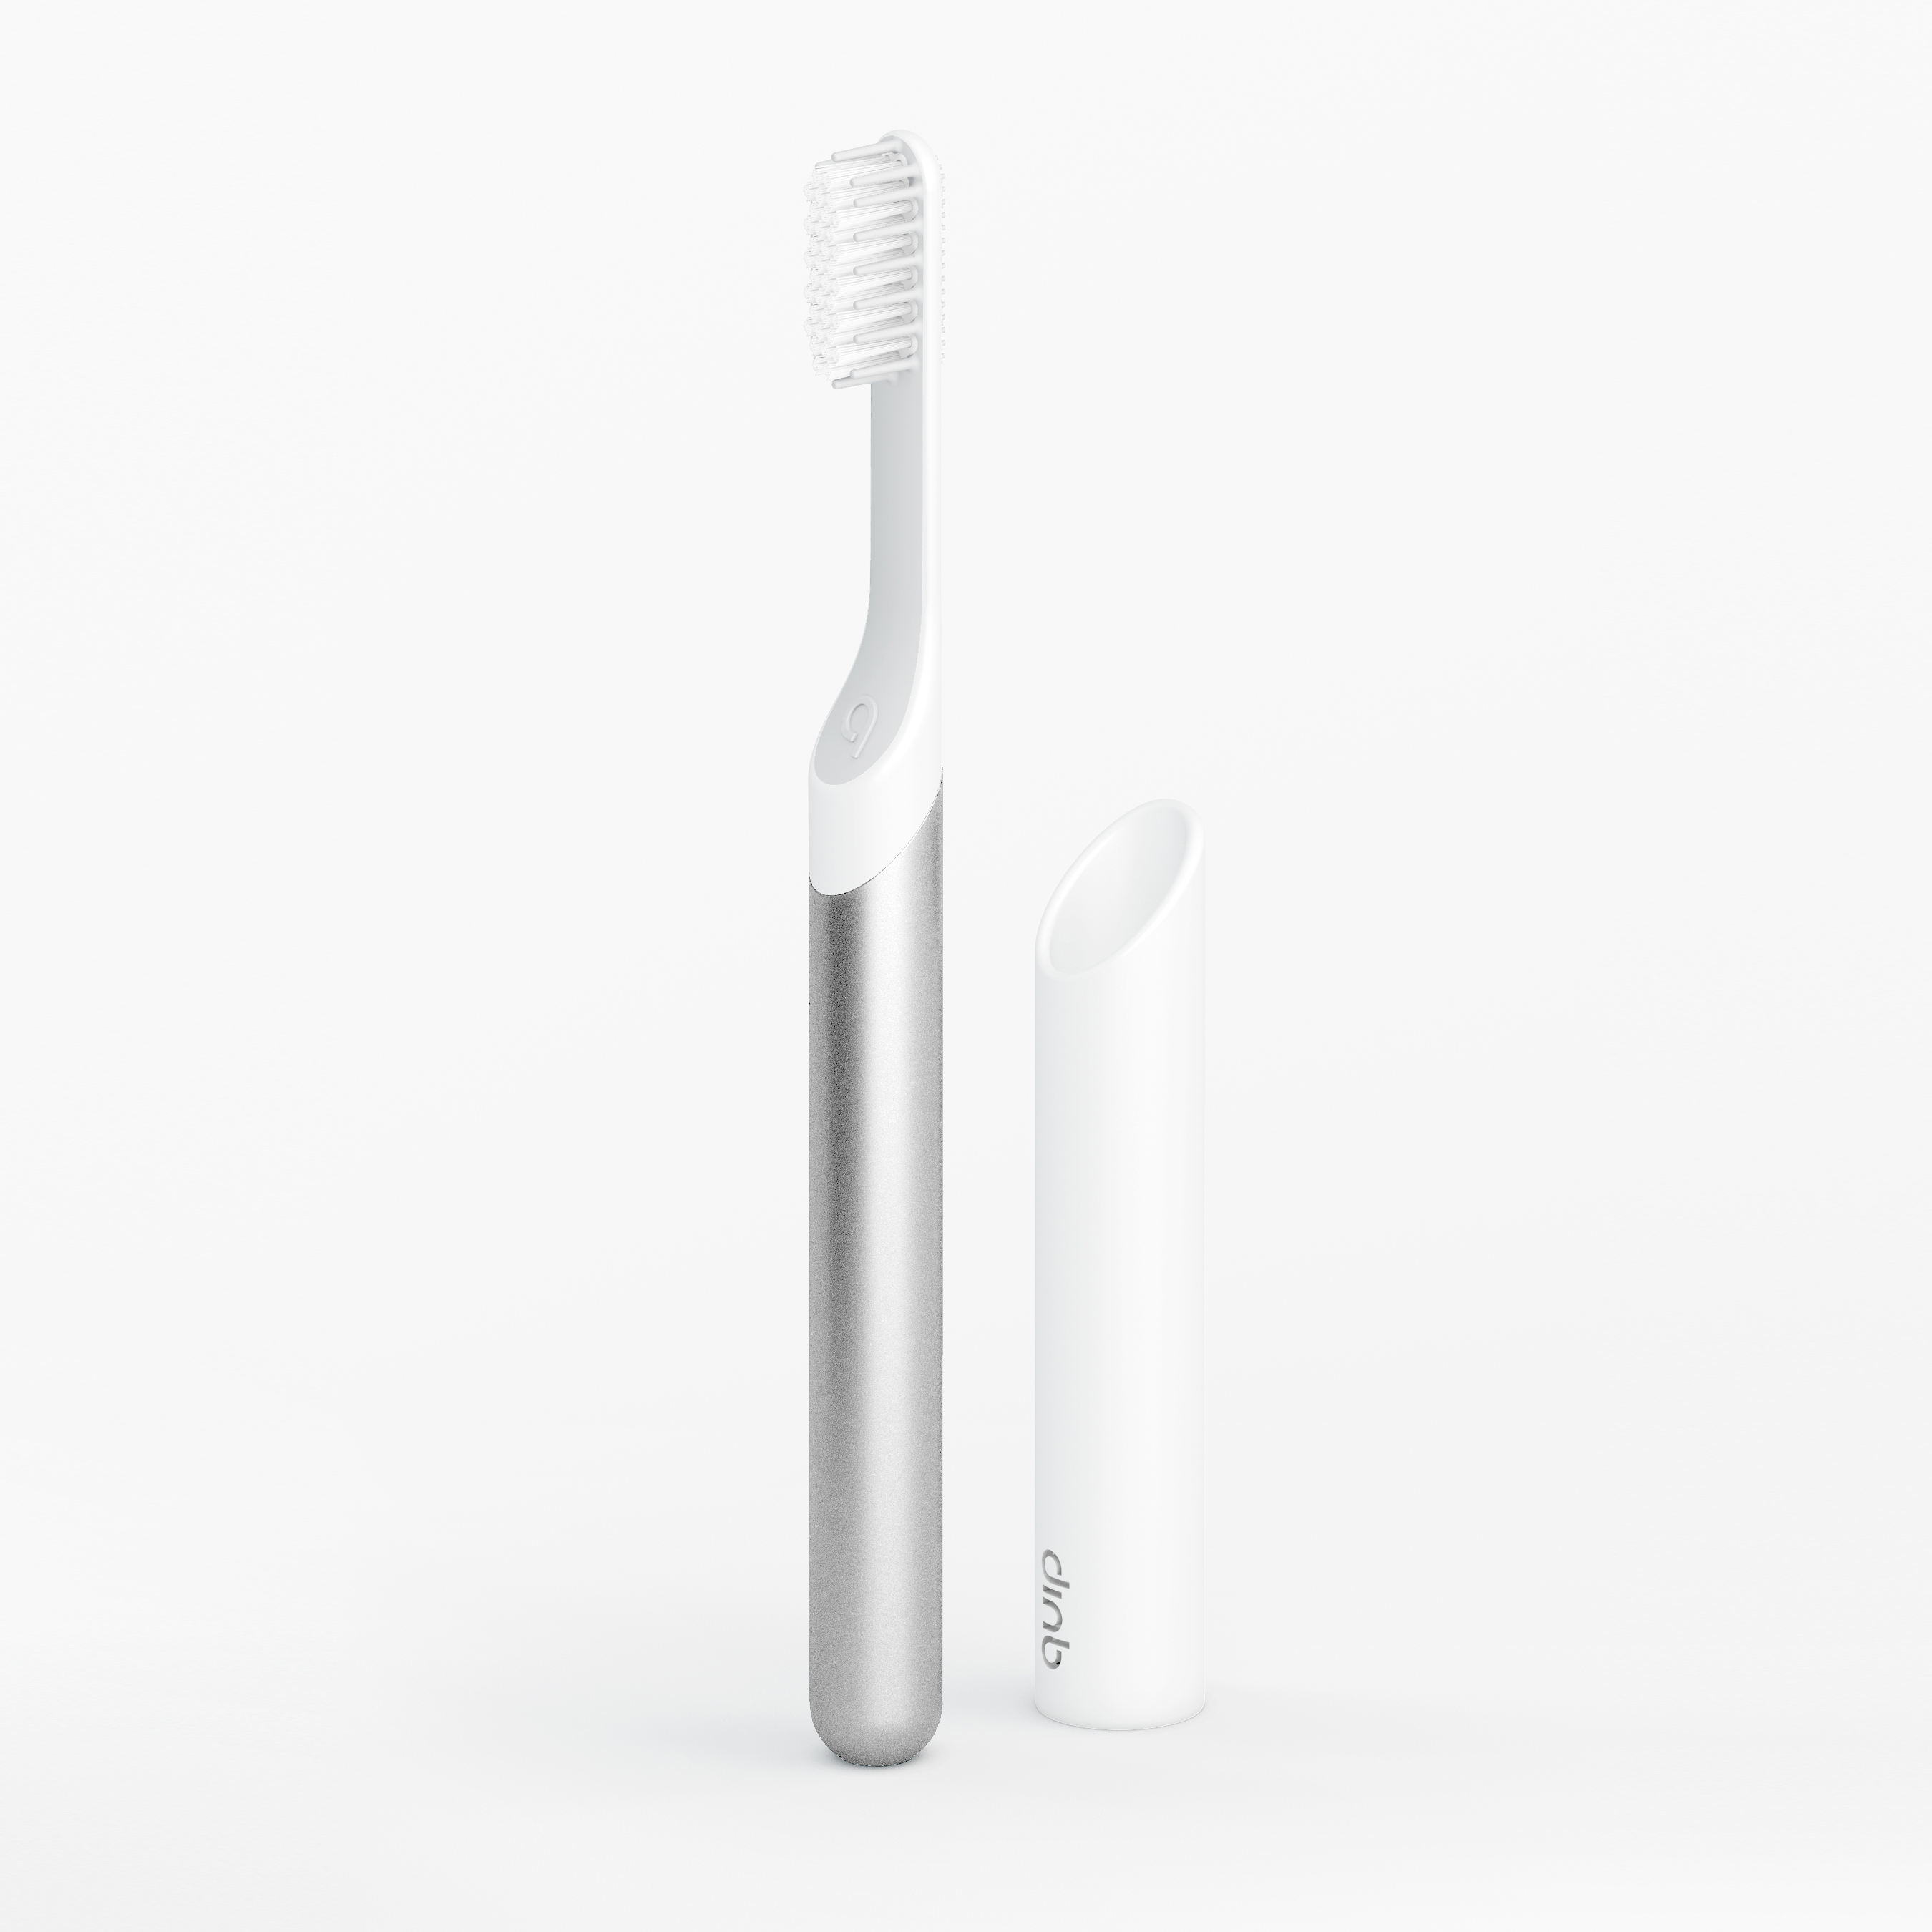 Silver metal electric toothbrush detail image